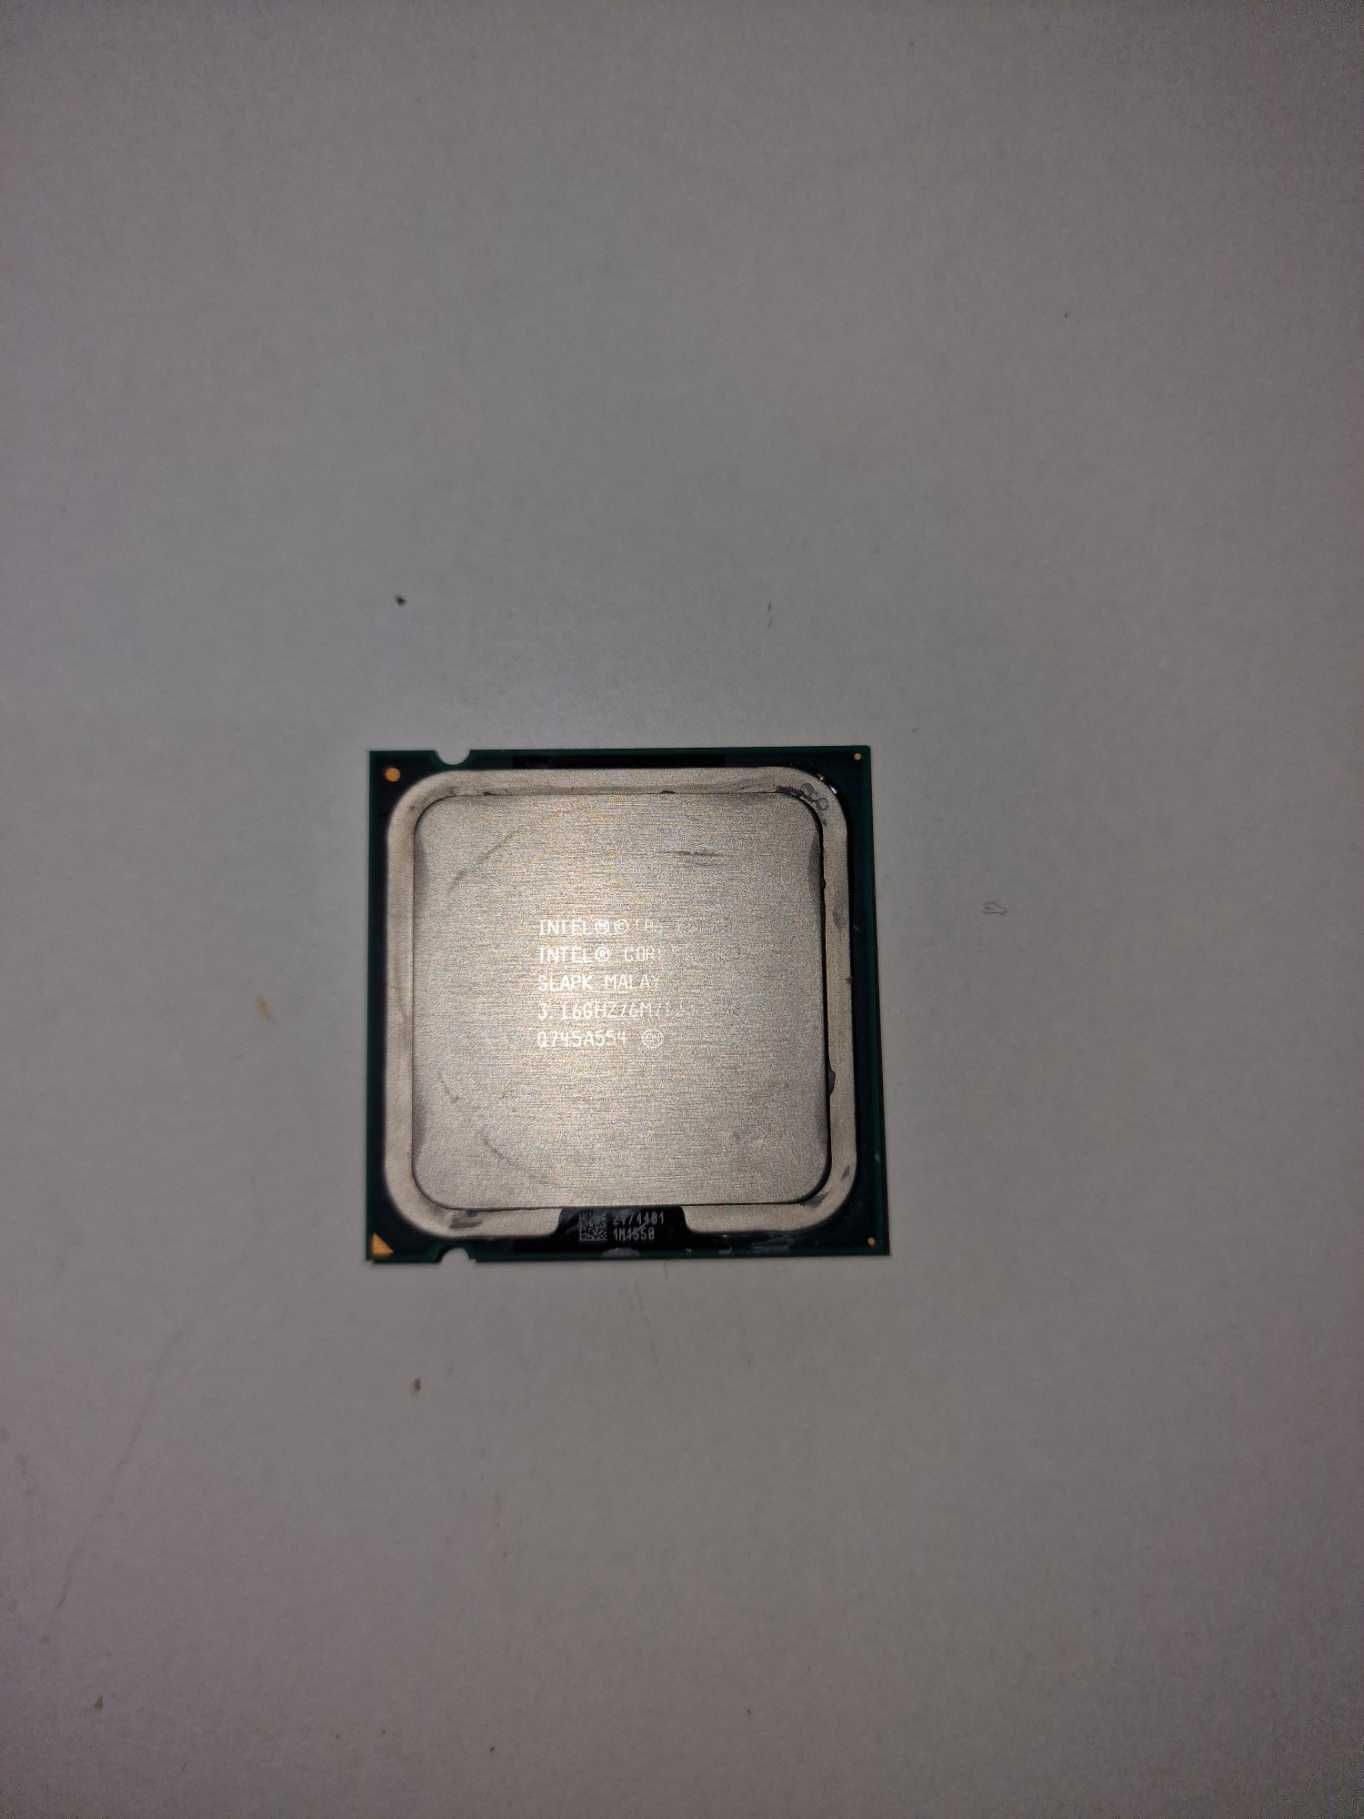 processador Intel Duo E8500